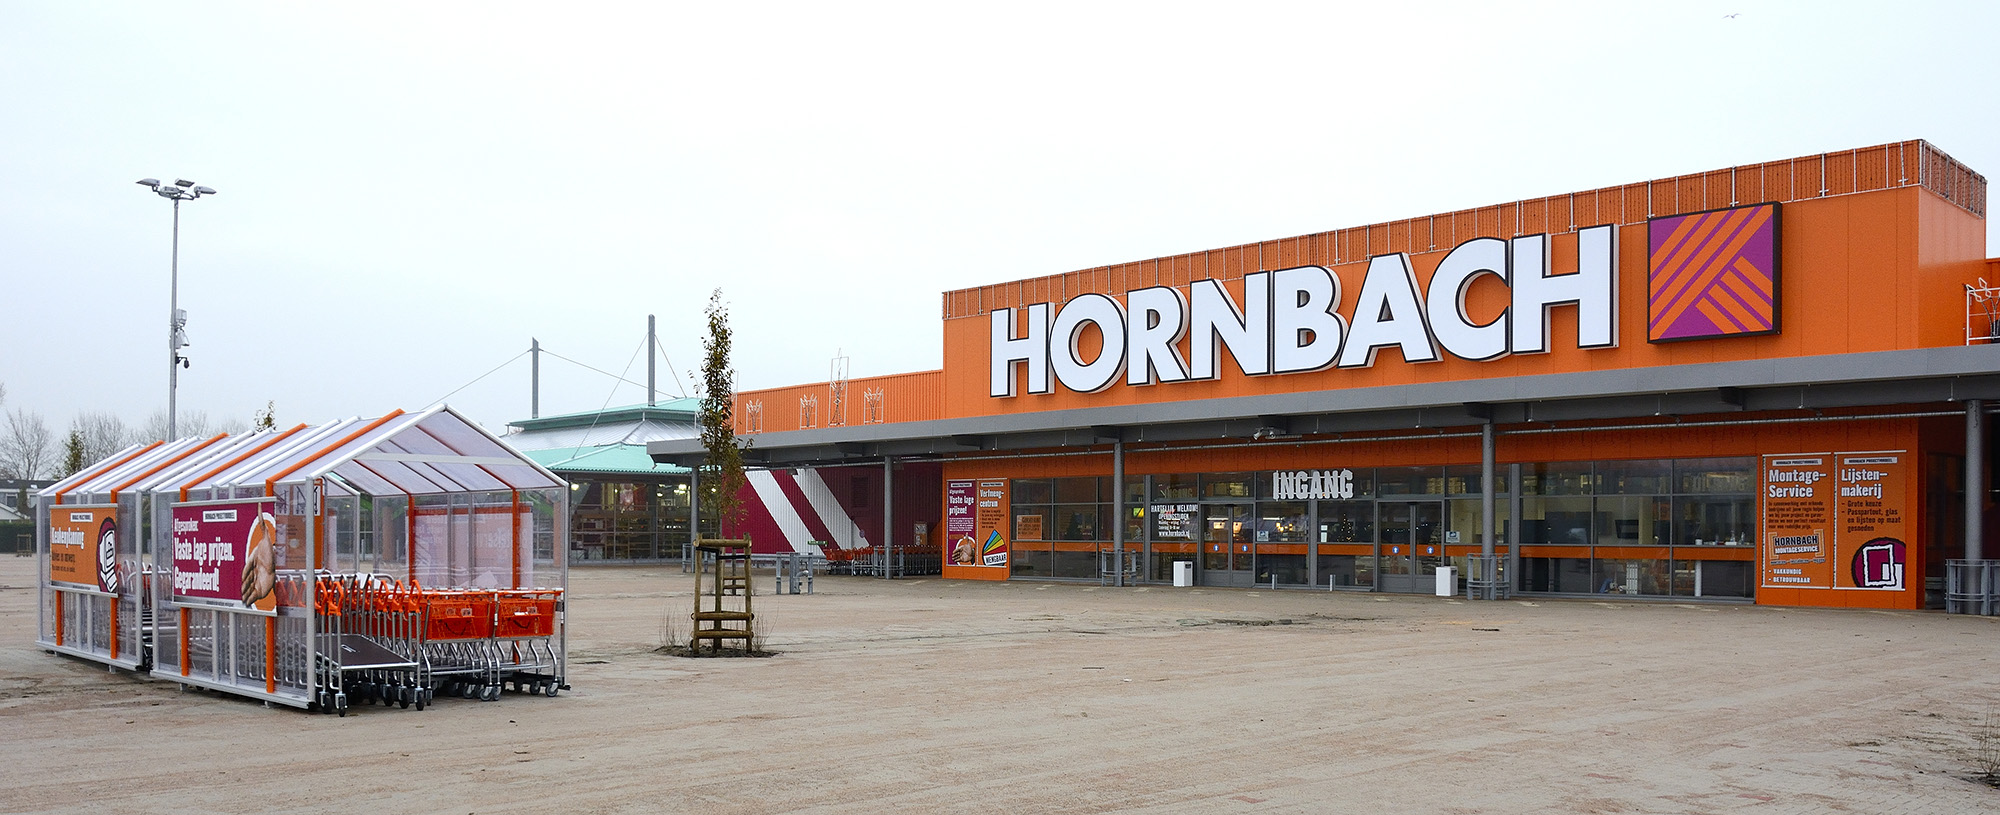 Hornbach Nieuwerkerk aan den IJssel geopend - Hornbach ...
